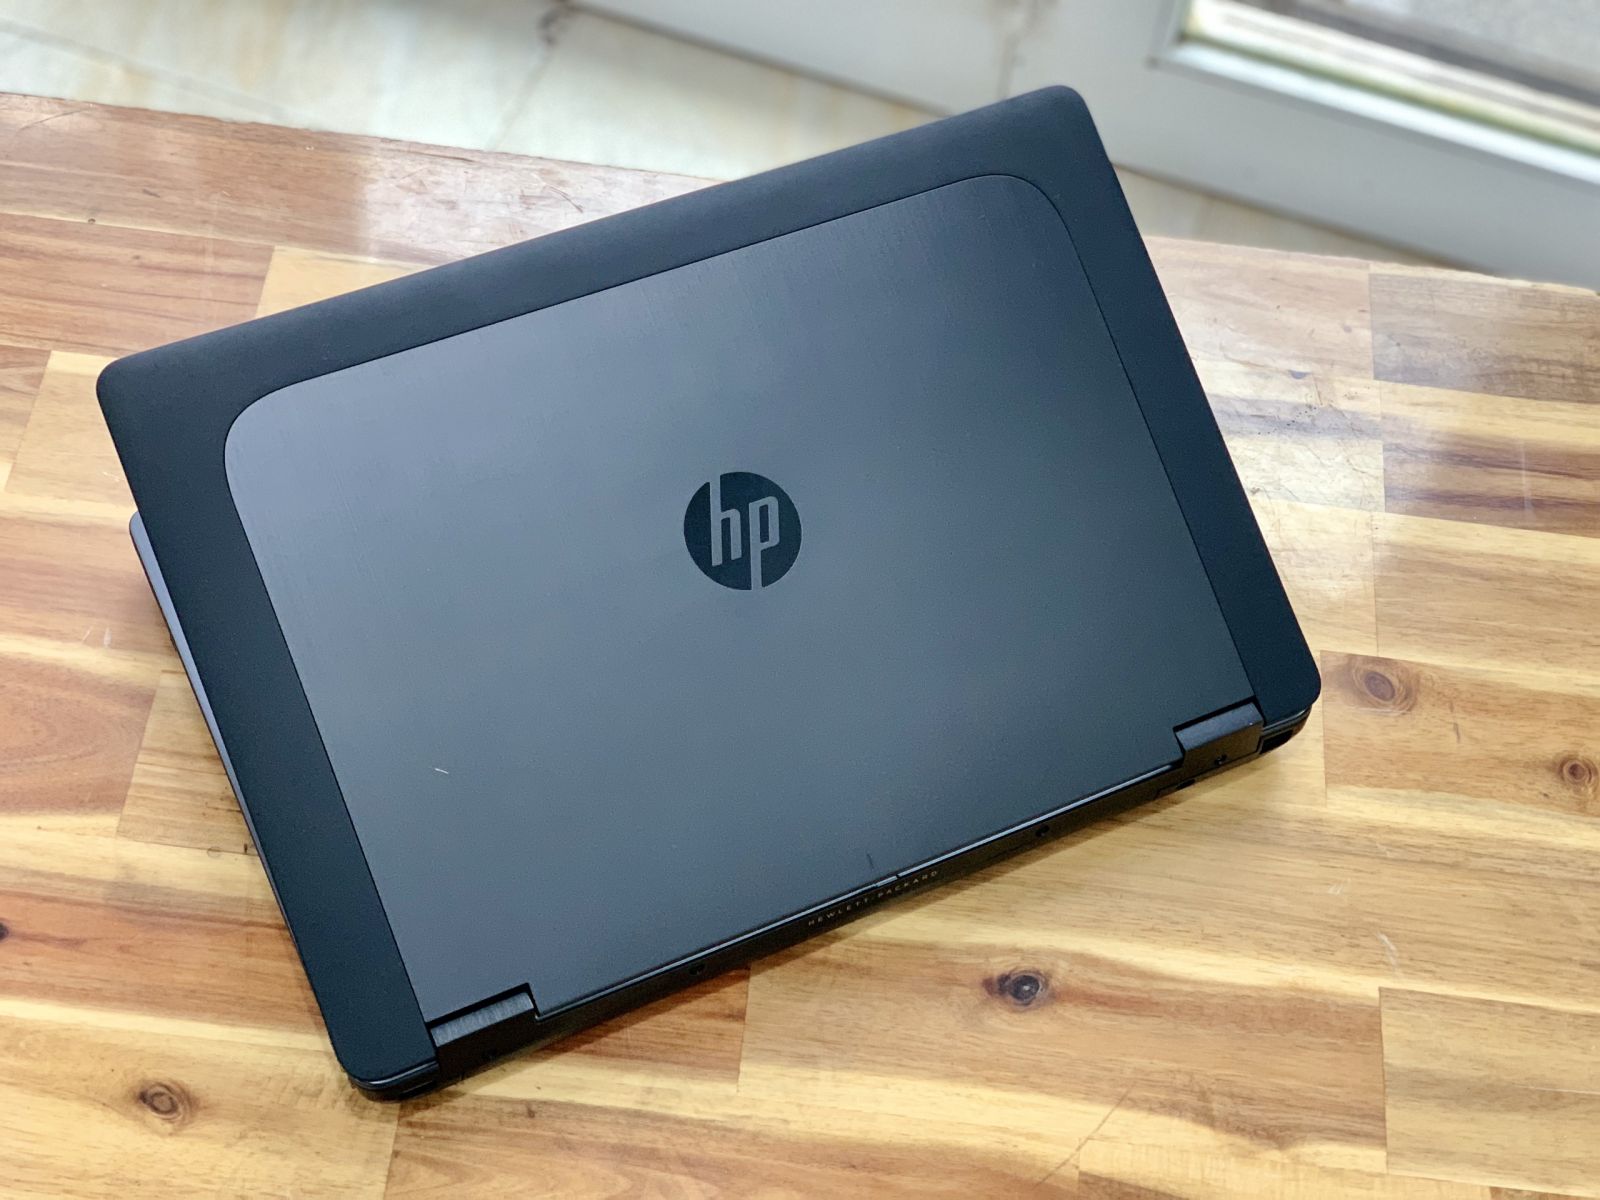 Hình ảnh HP Zbook 17 i7 Giá rẻ của Laptop Minh Mẫn